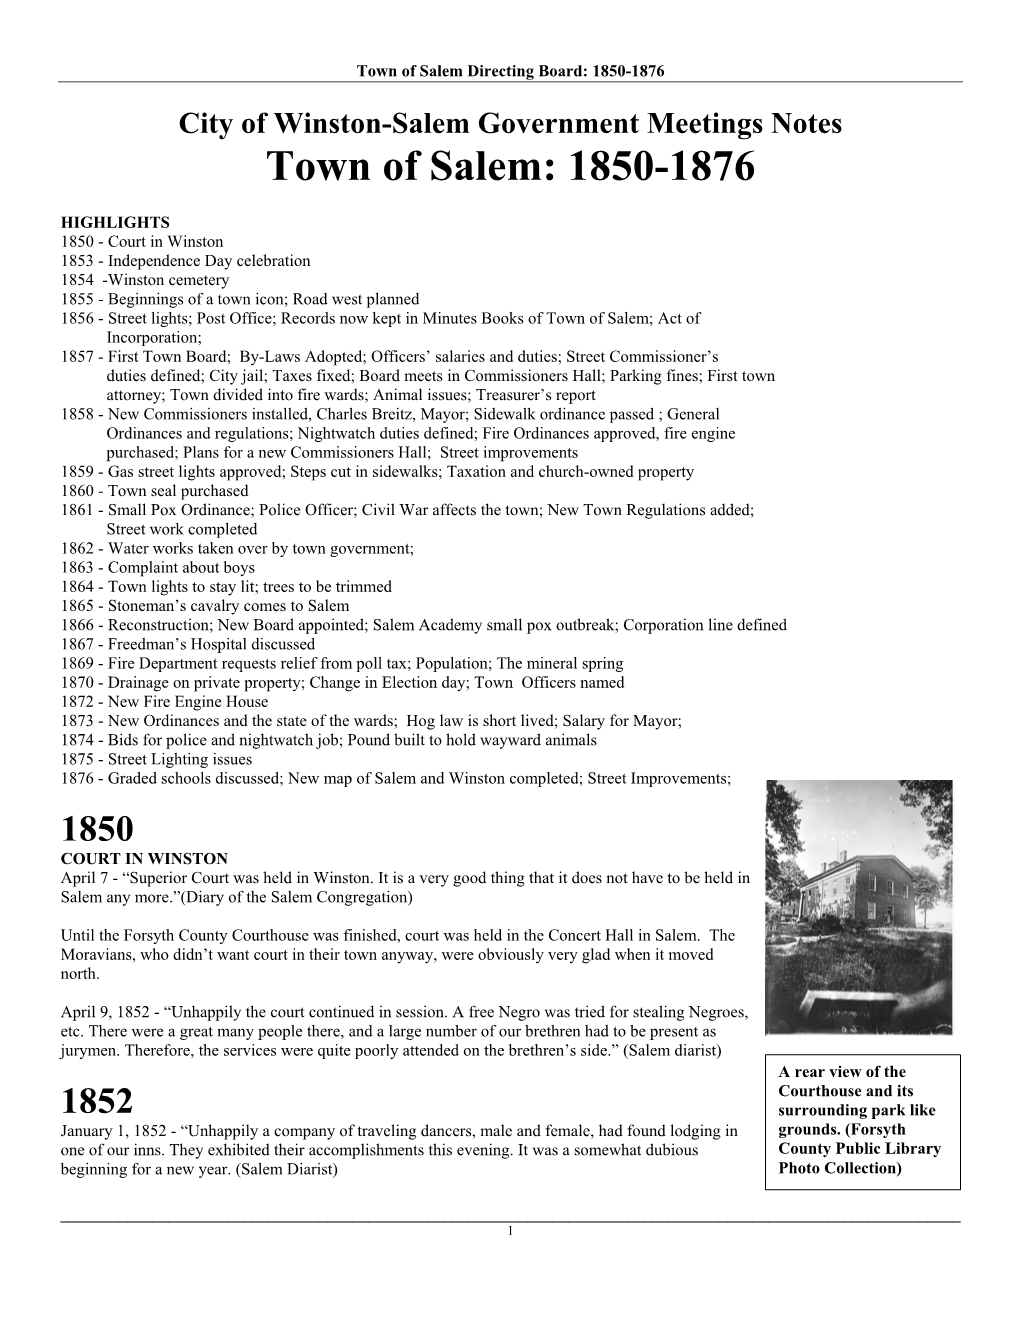 1850 to 1876 (PDF)